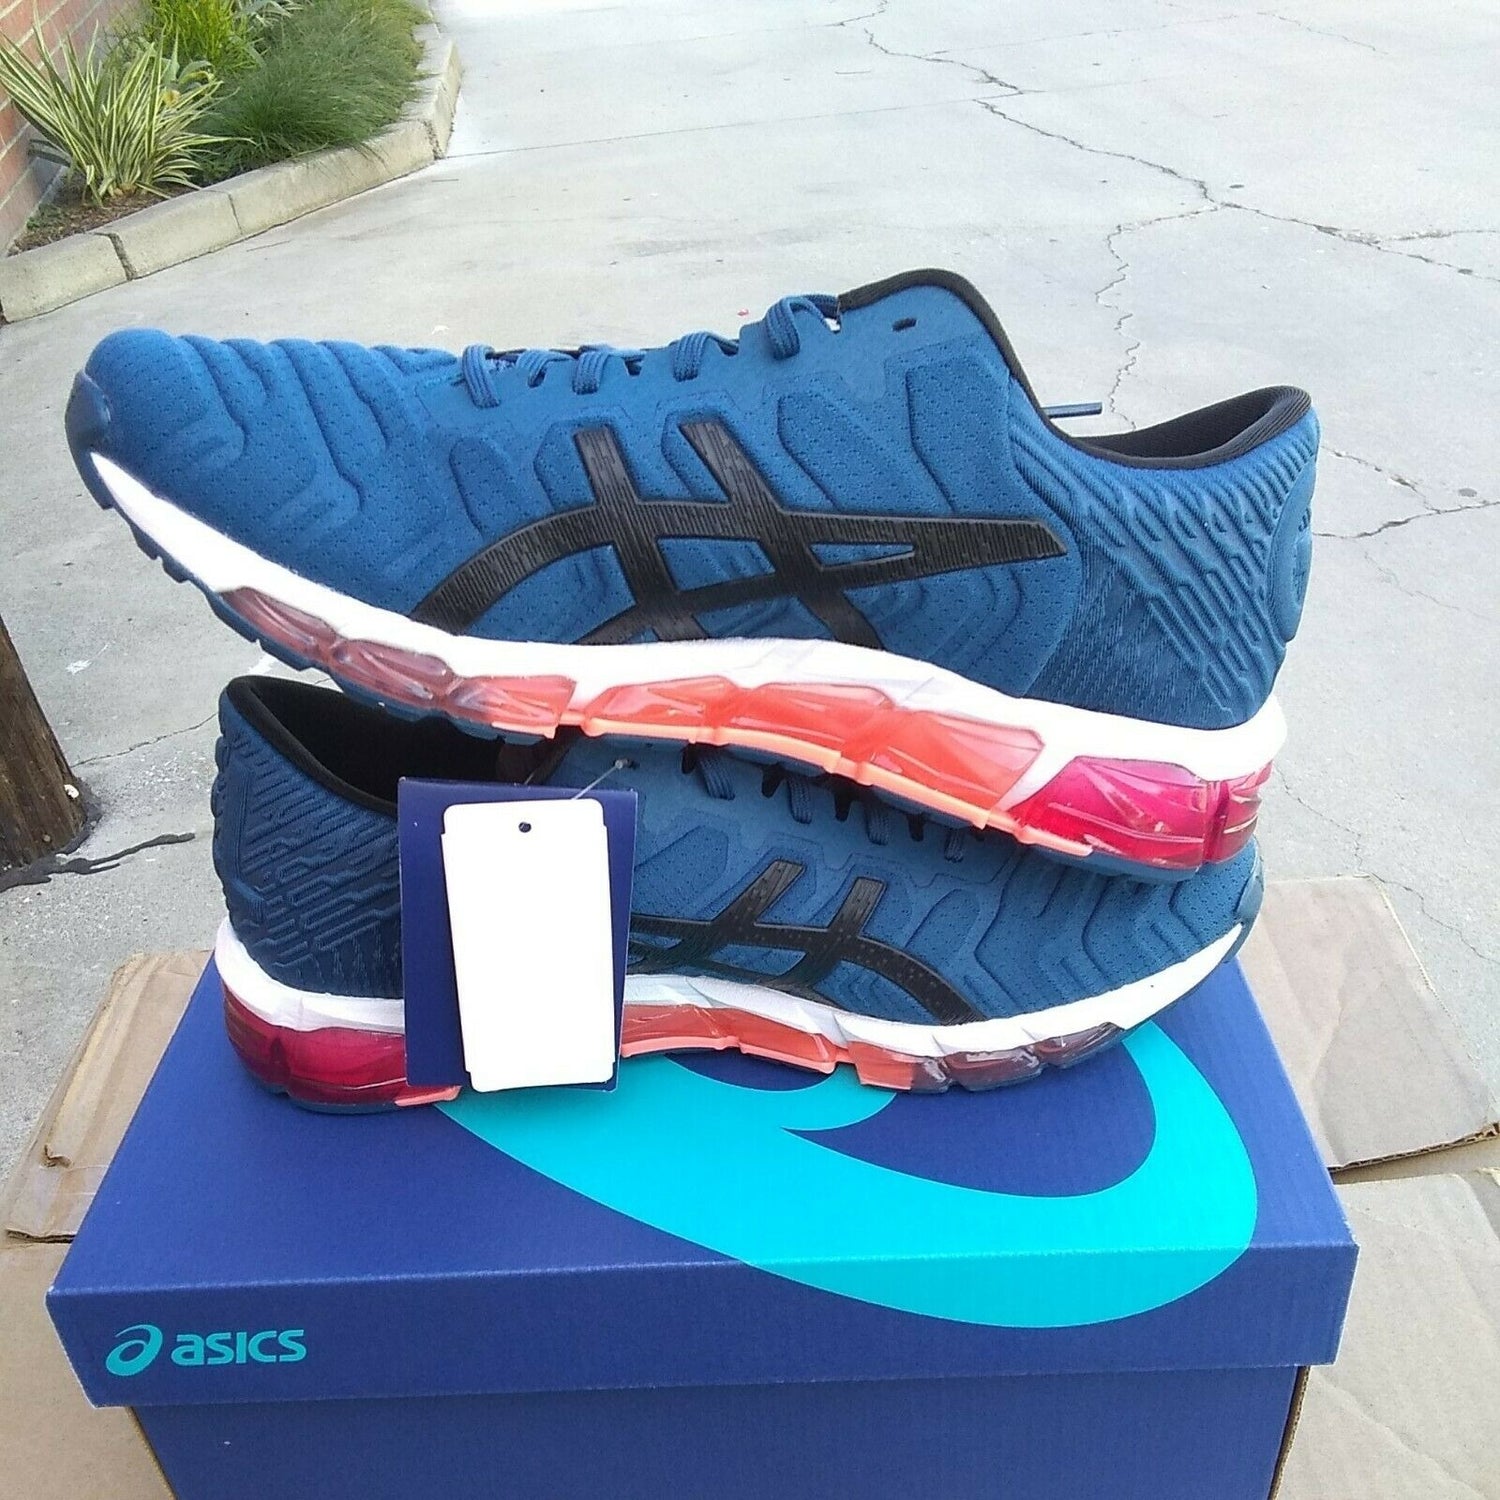 Asics woman"s gel quantum 360 5 mako blue running shoes size 10.5 US